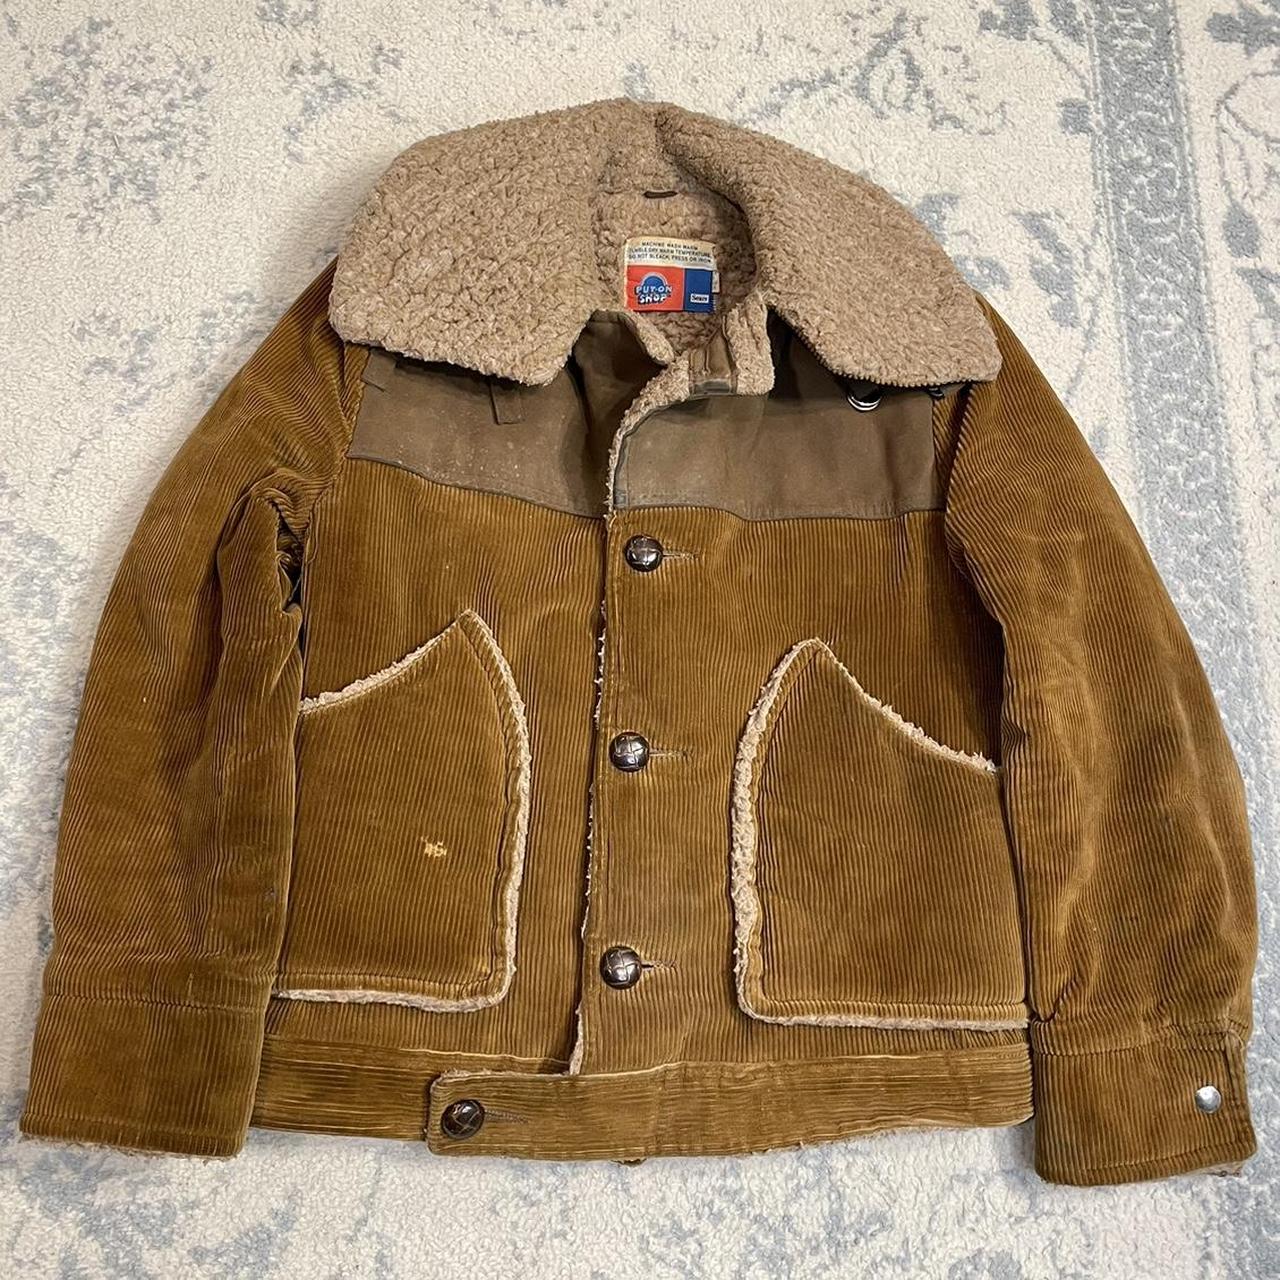 Vintage 60s/70s Sears Corduroy/Wool Jacket flaws... - Depop